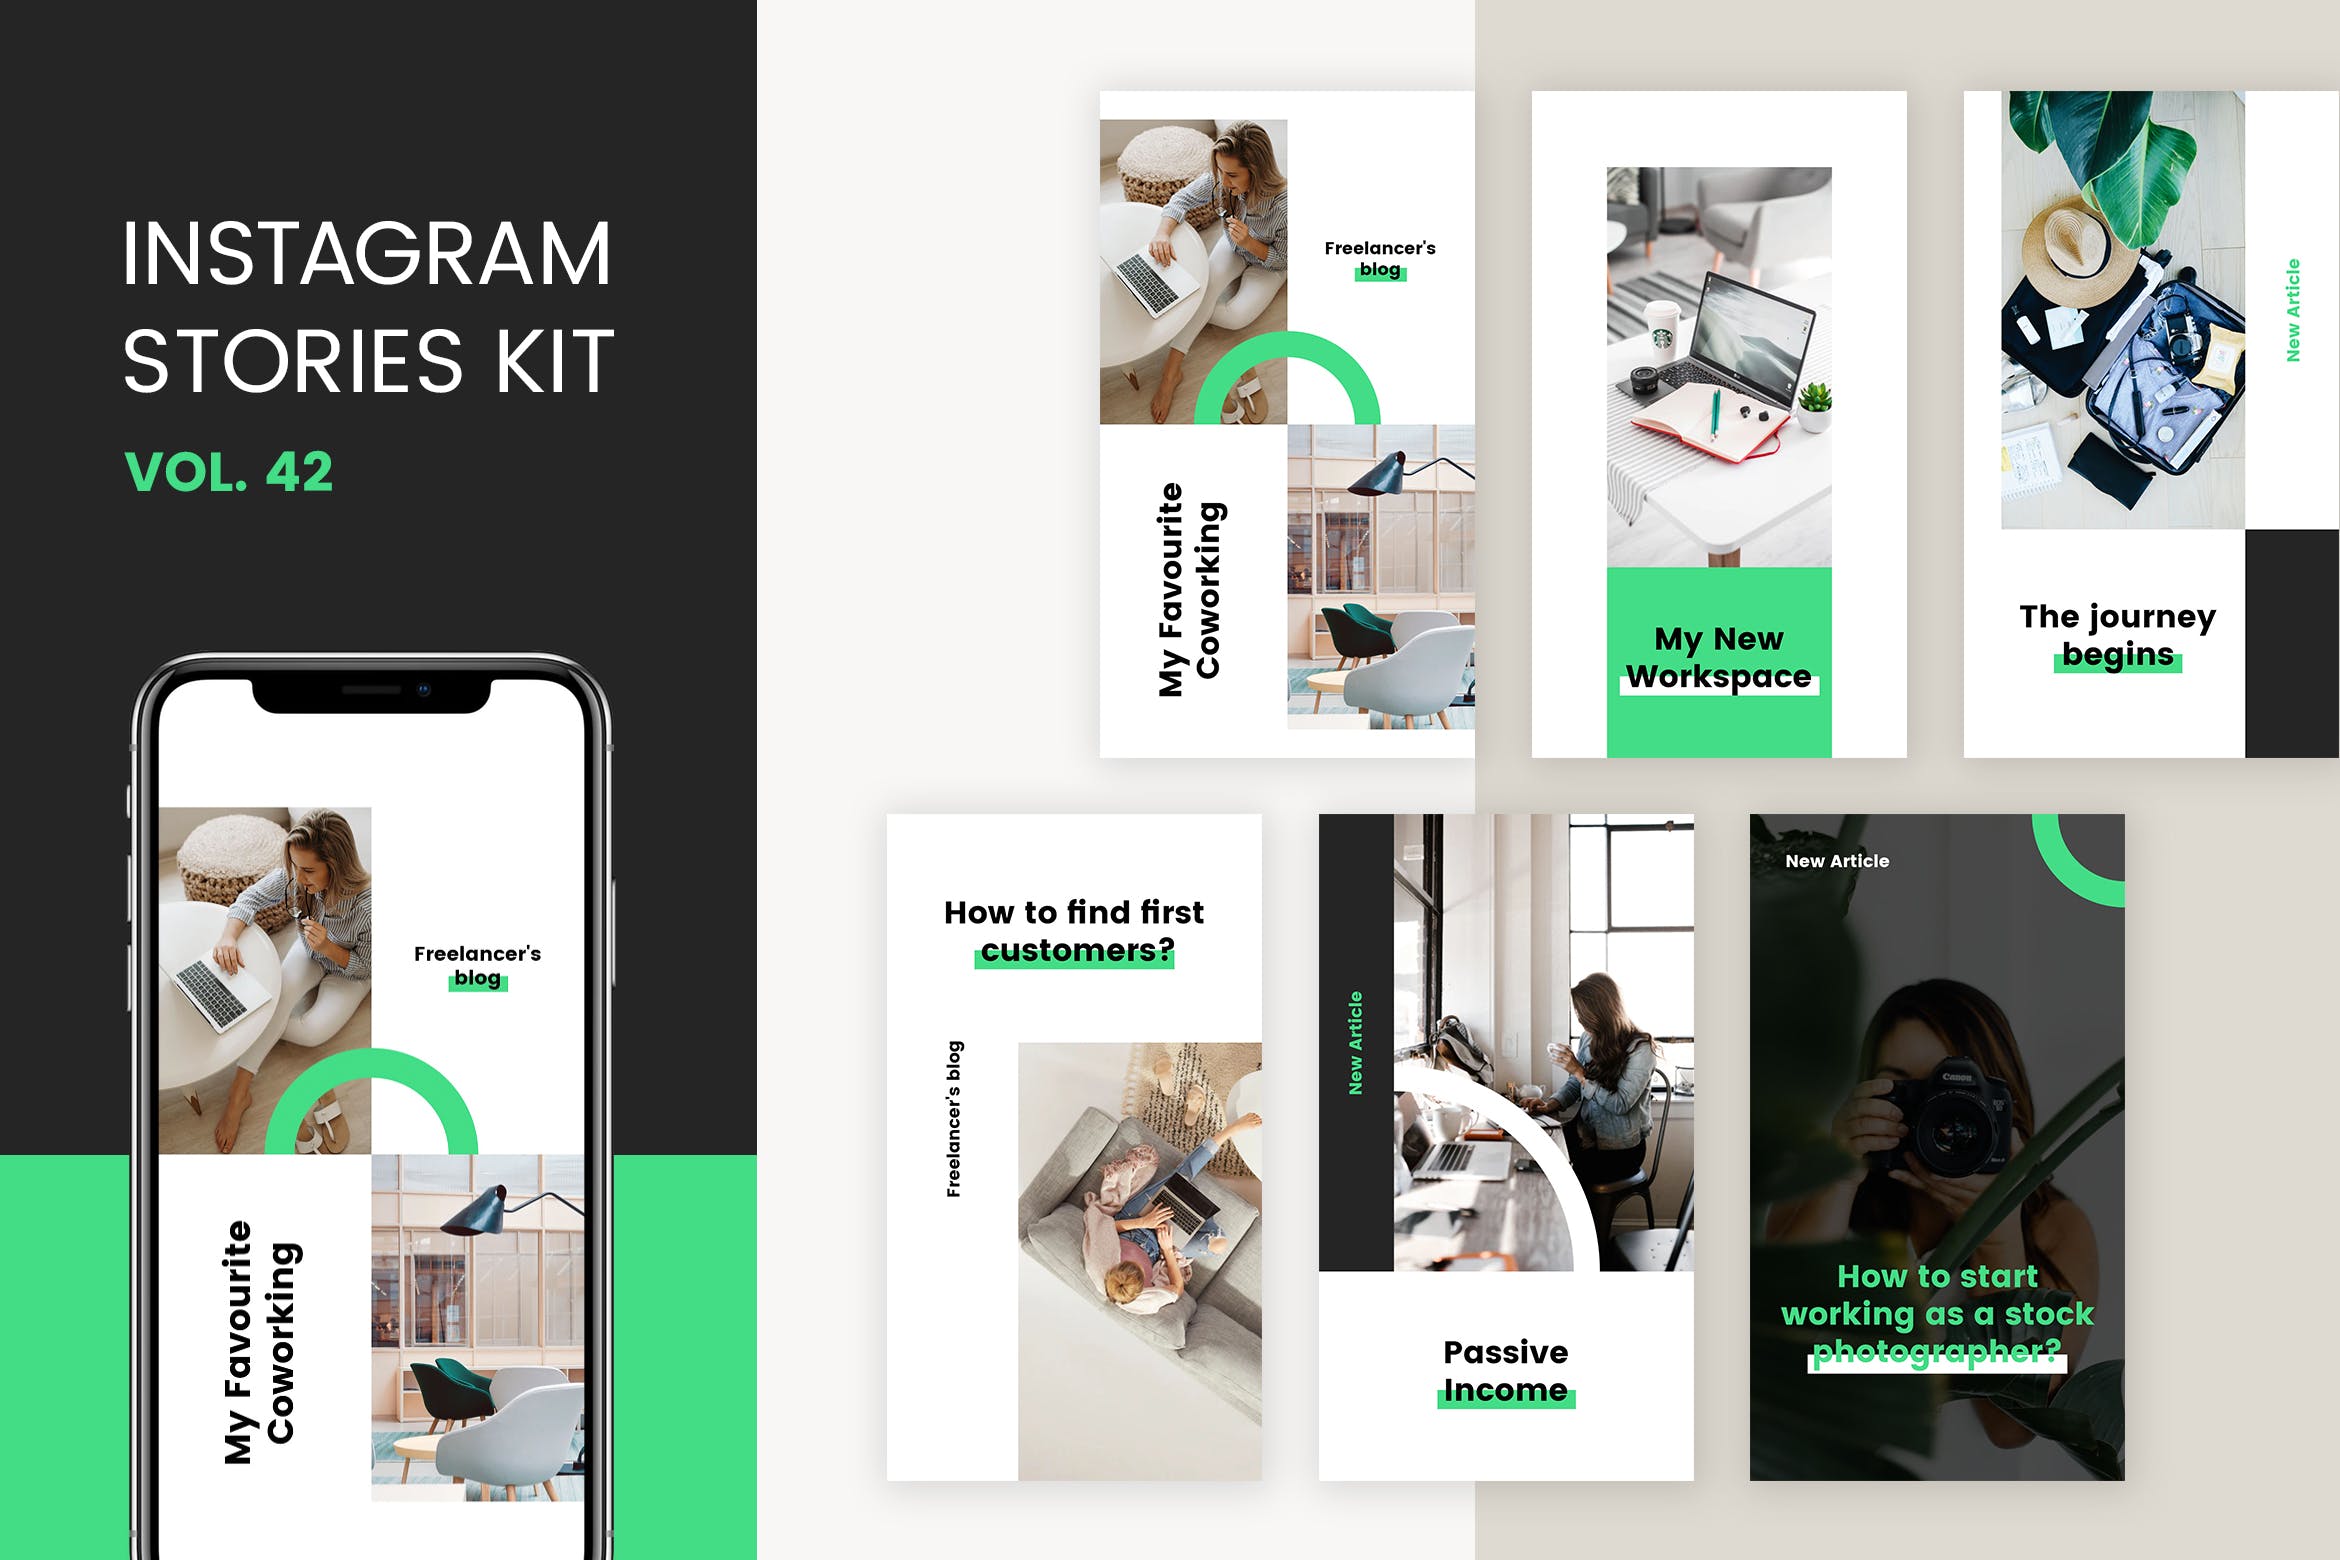 居家办公主题推广Instagram社交媒体品牌故事设计模板 Instagram Stories Kit (Vol.42)设计素材模板